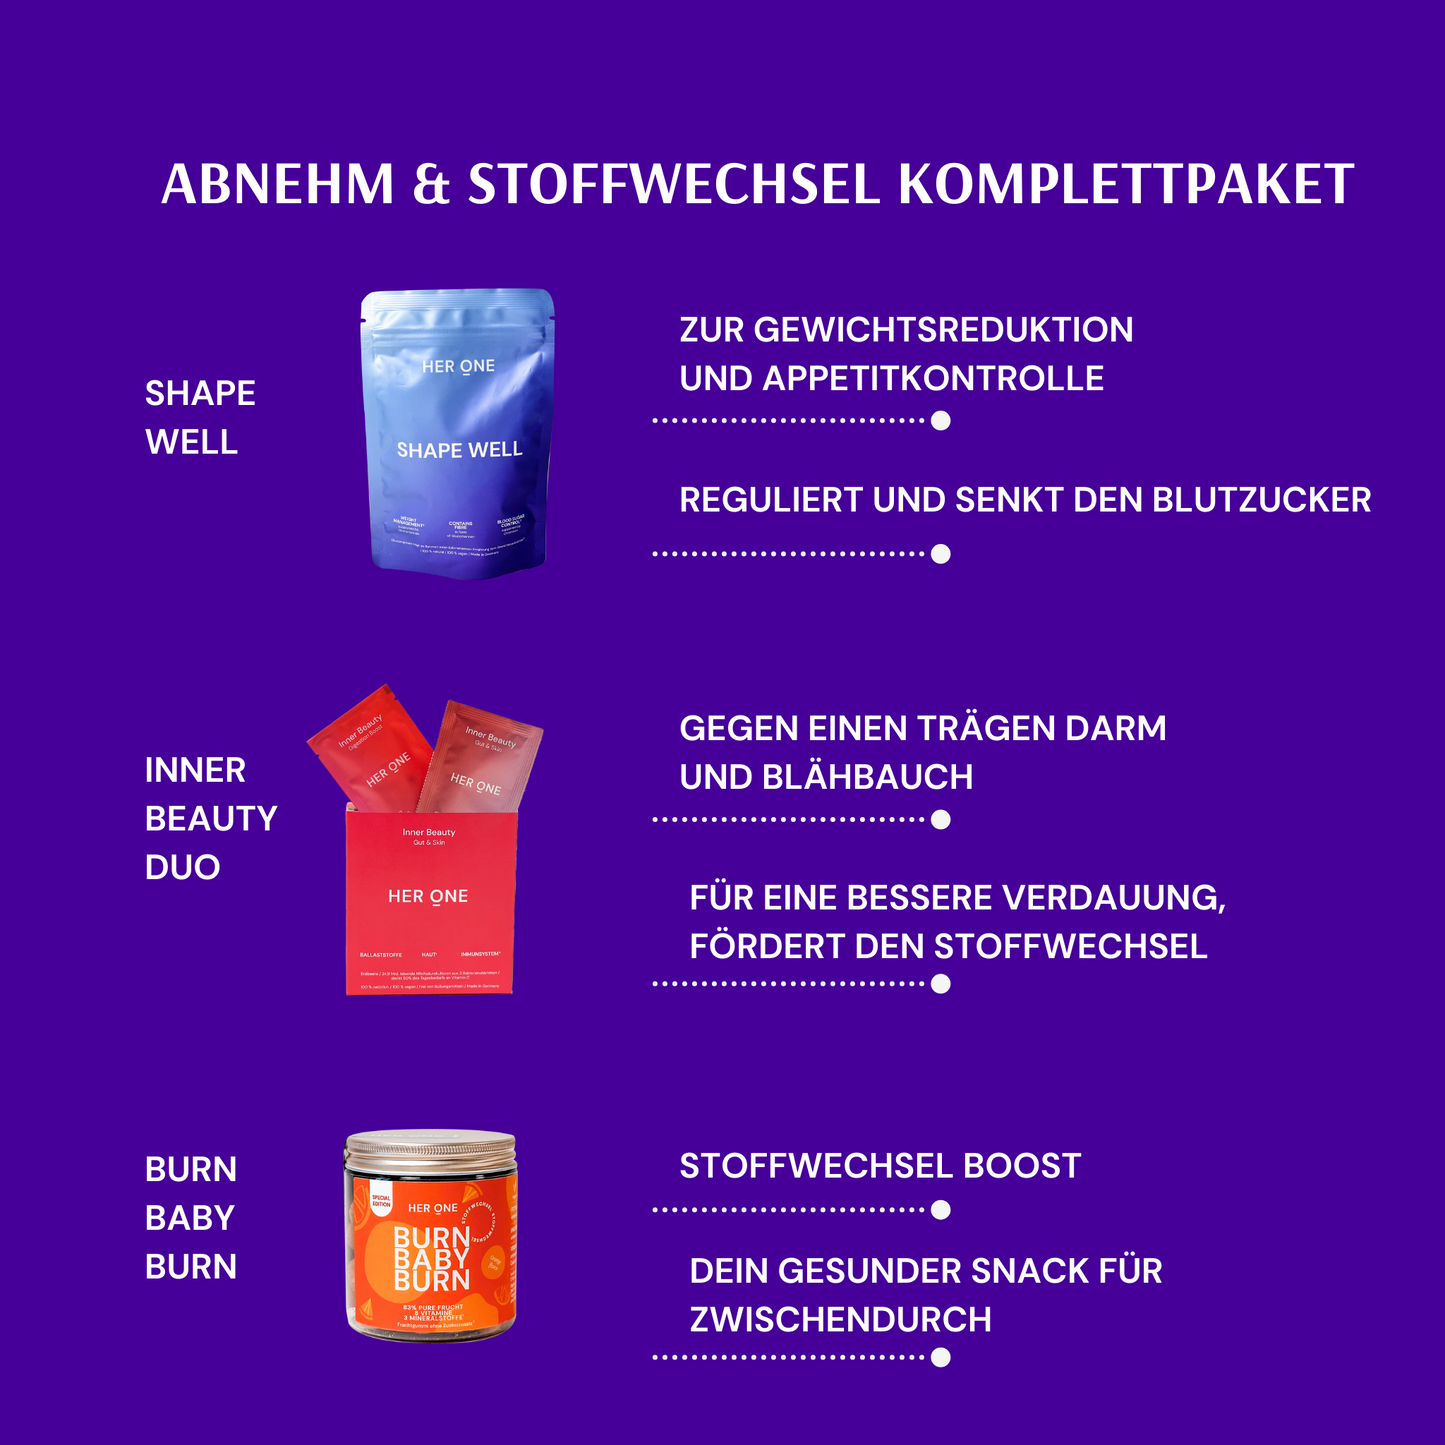 Abnehm & Stoffwechsel Komplettpaket